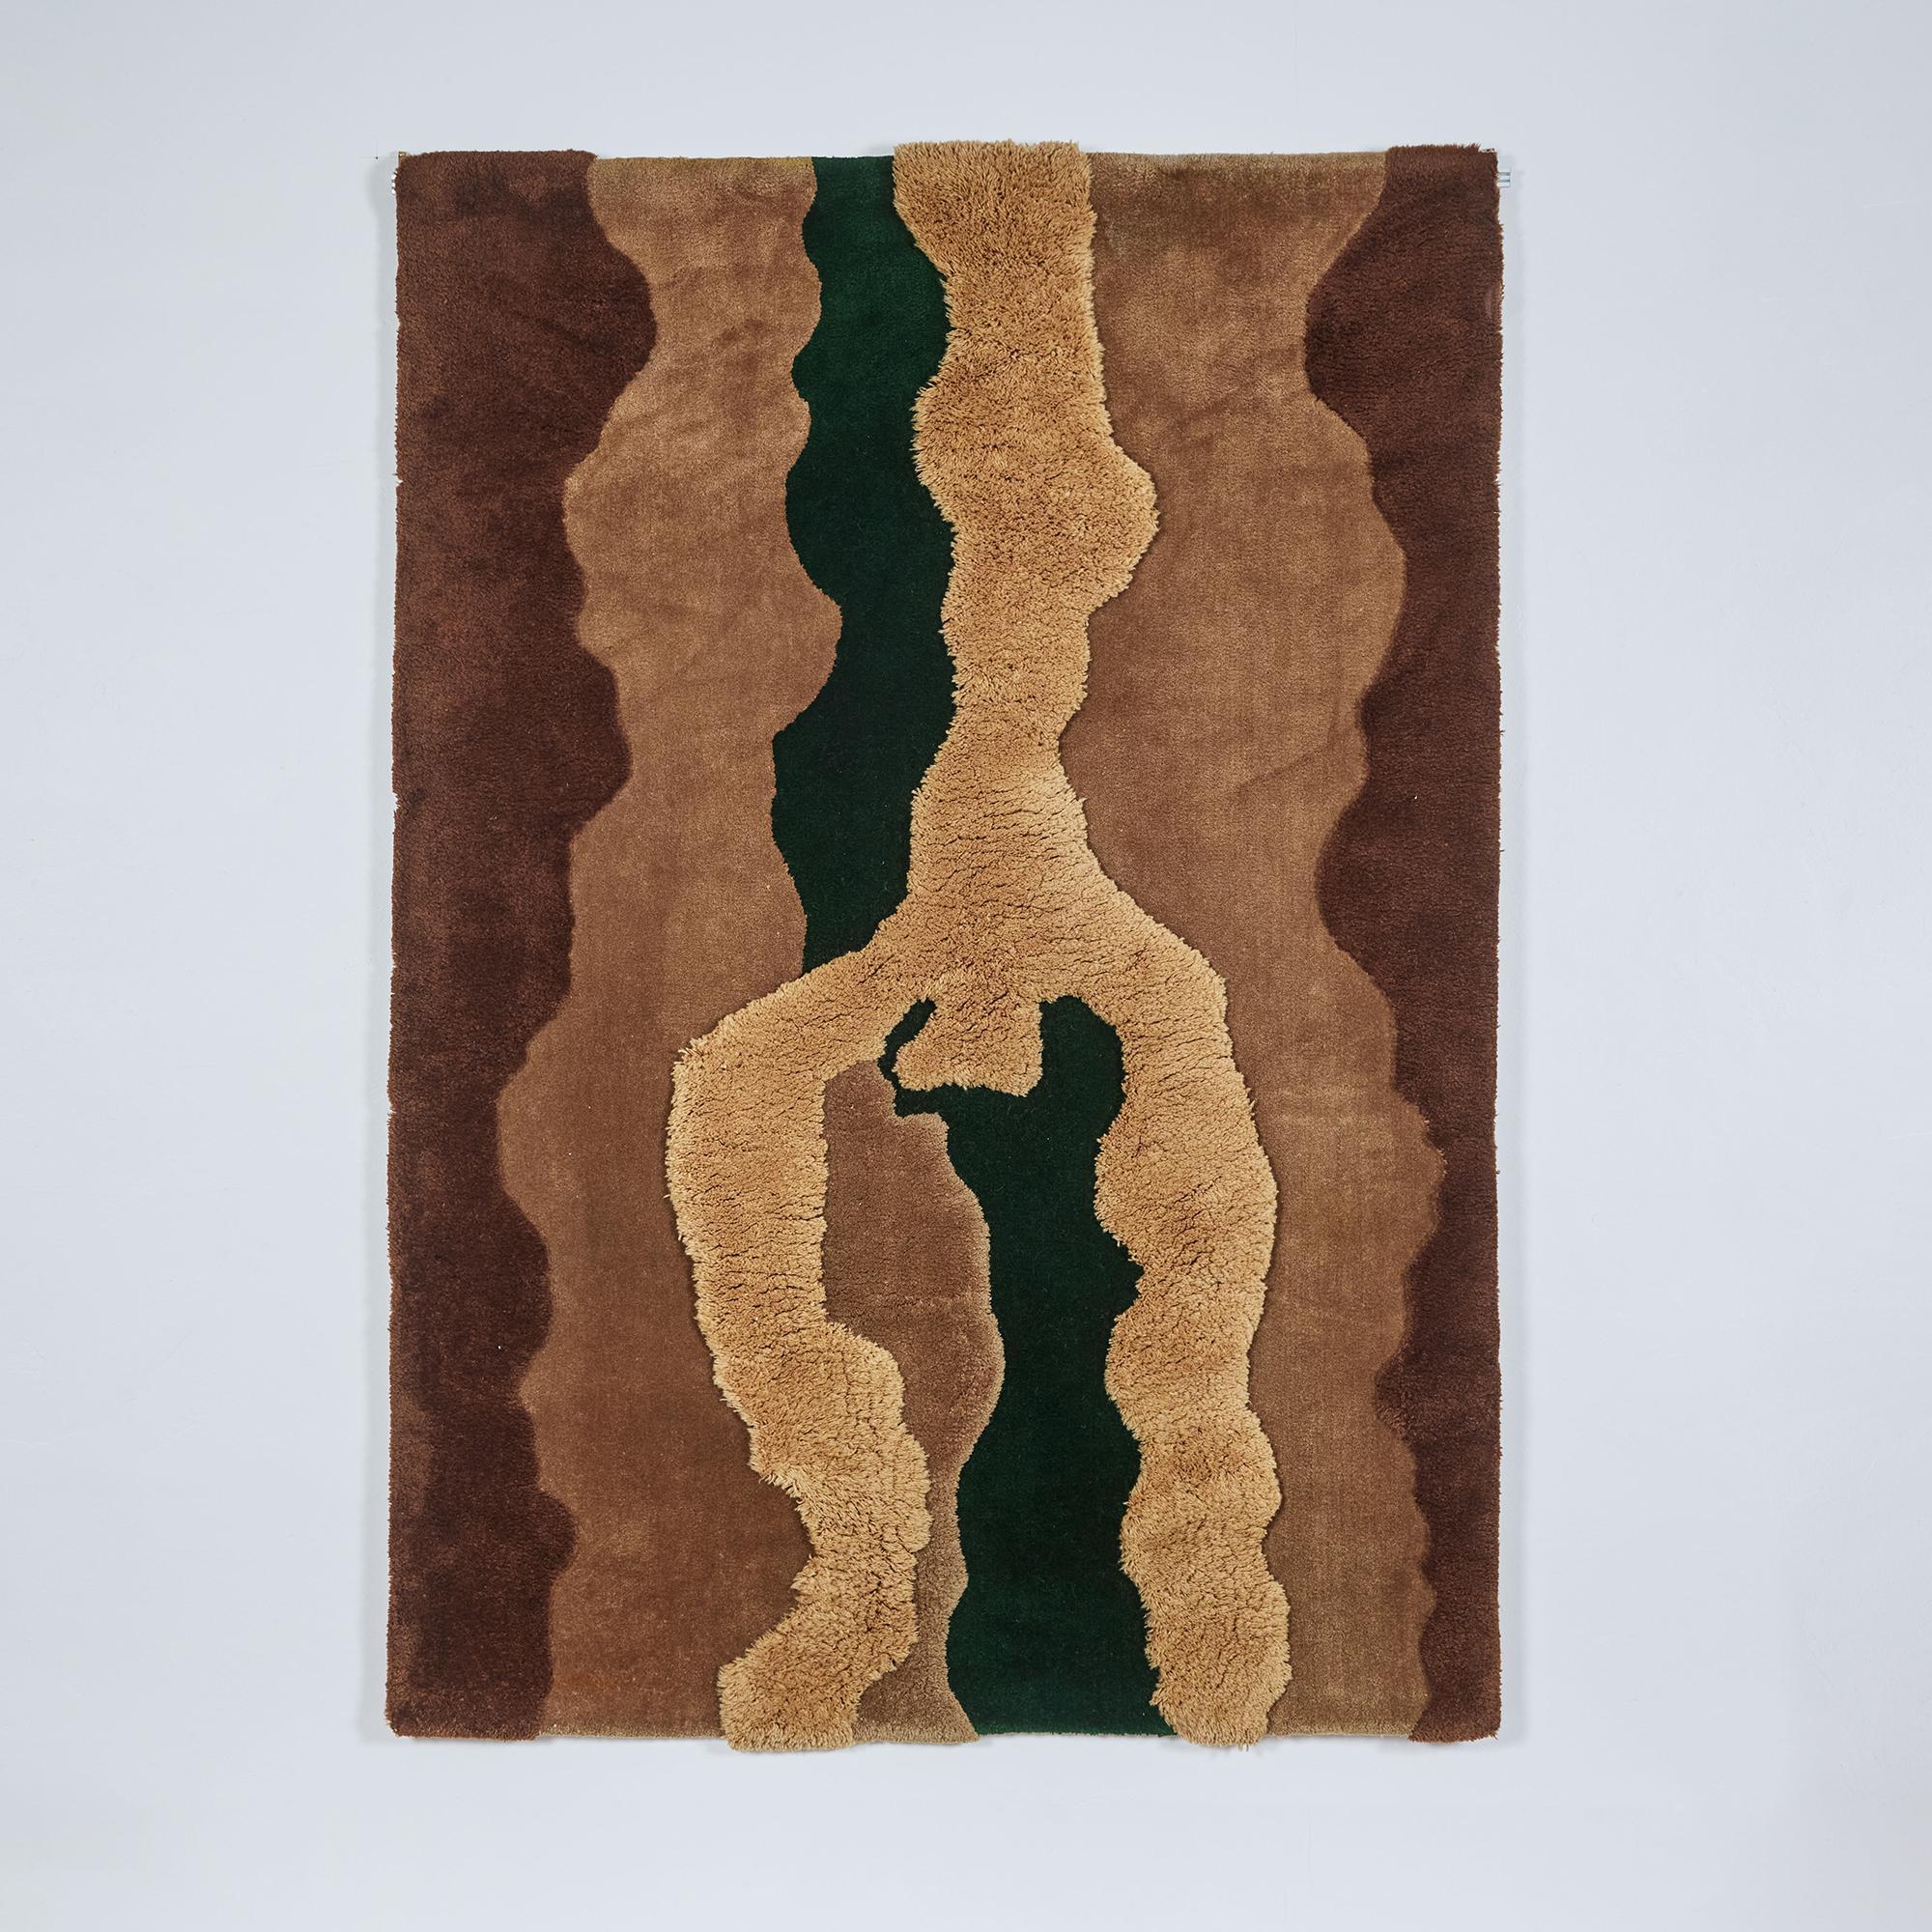 Teppich oder Wandteppich von Edward Fields, ca. 1970er Jahre, USA. Dieser handgeknüpfte Wollteppich weist unterschiedliche Florhöhen auf, die dem Stück Tiefe und Struktur verleihen. Seine Farbe reicht von Braun-, Karamell- und Bräunetönen bis hin zu